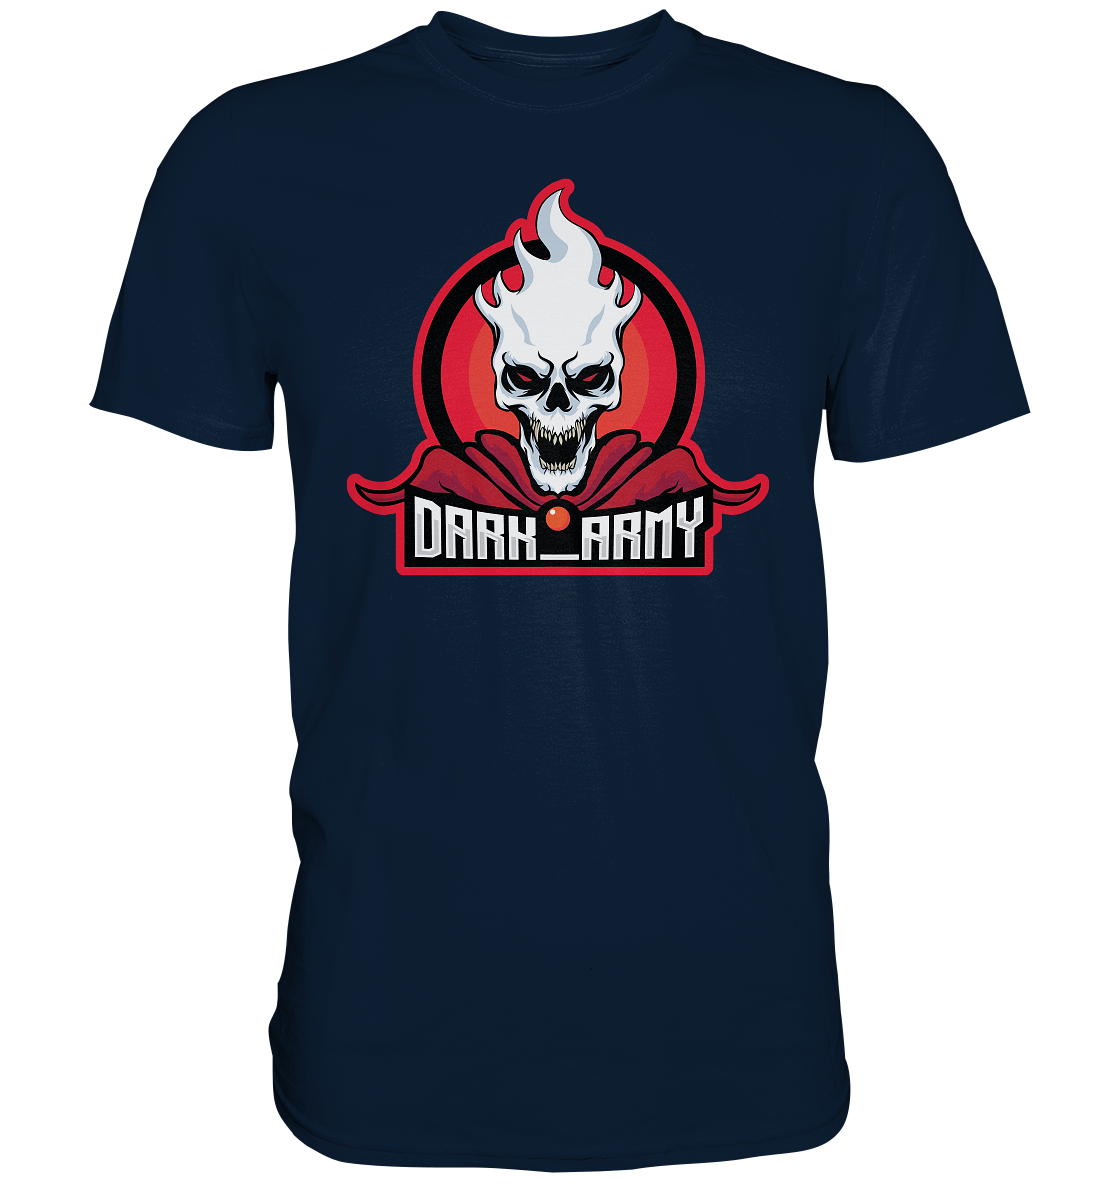 DARK ARMY - Basic Shirt